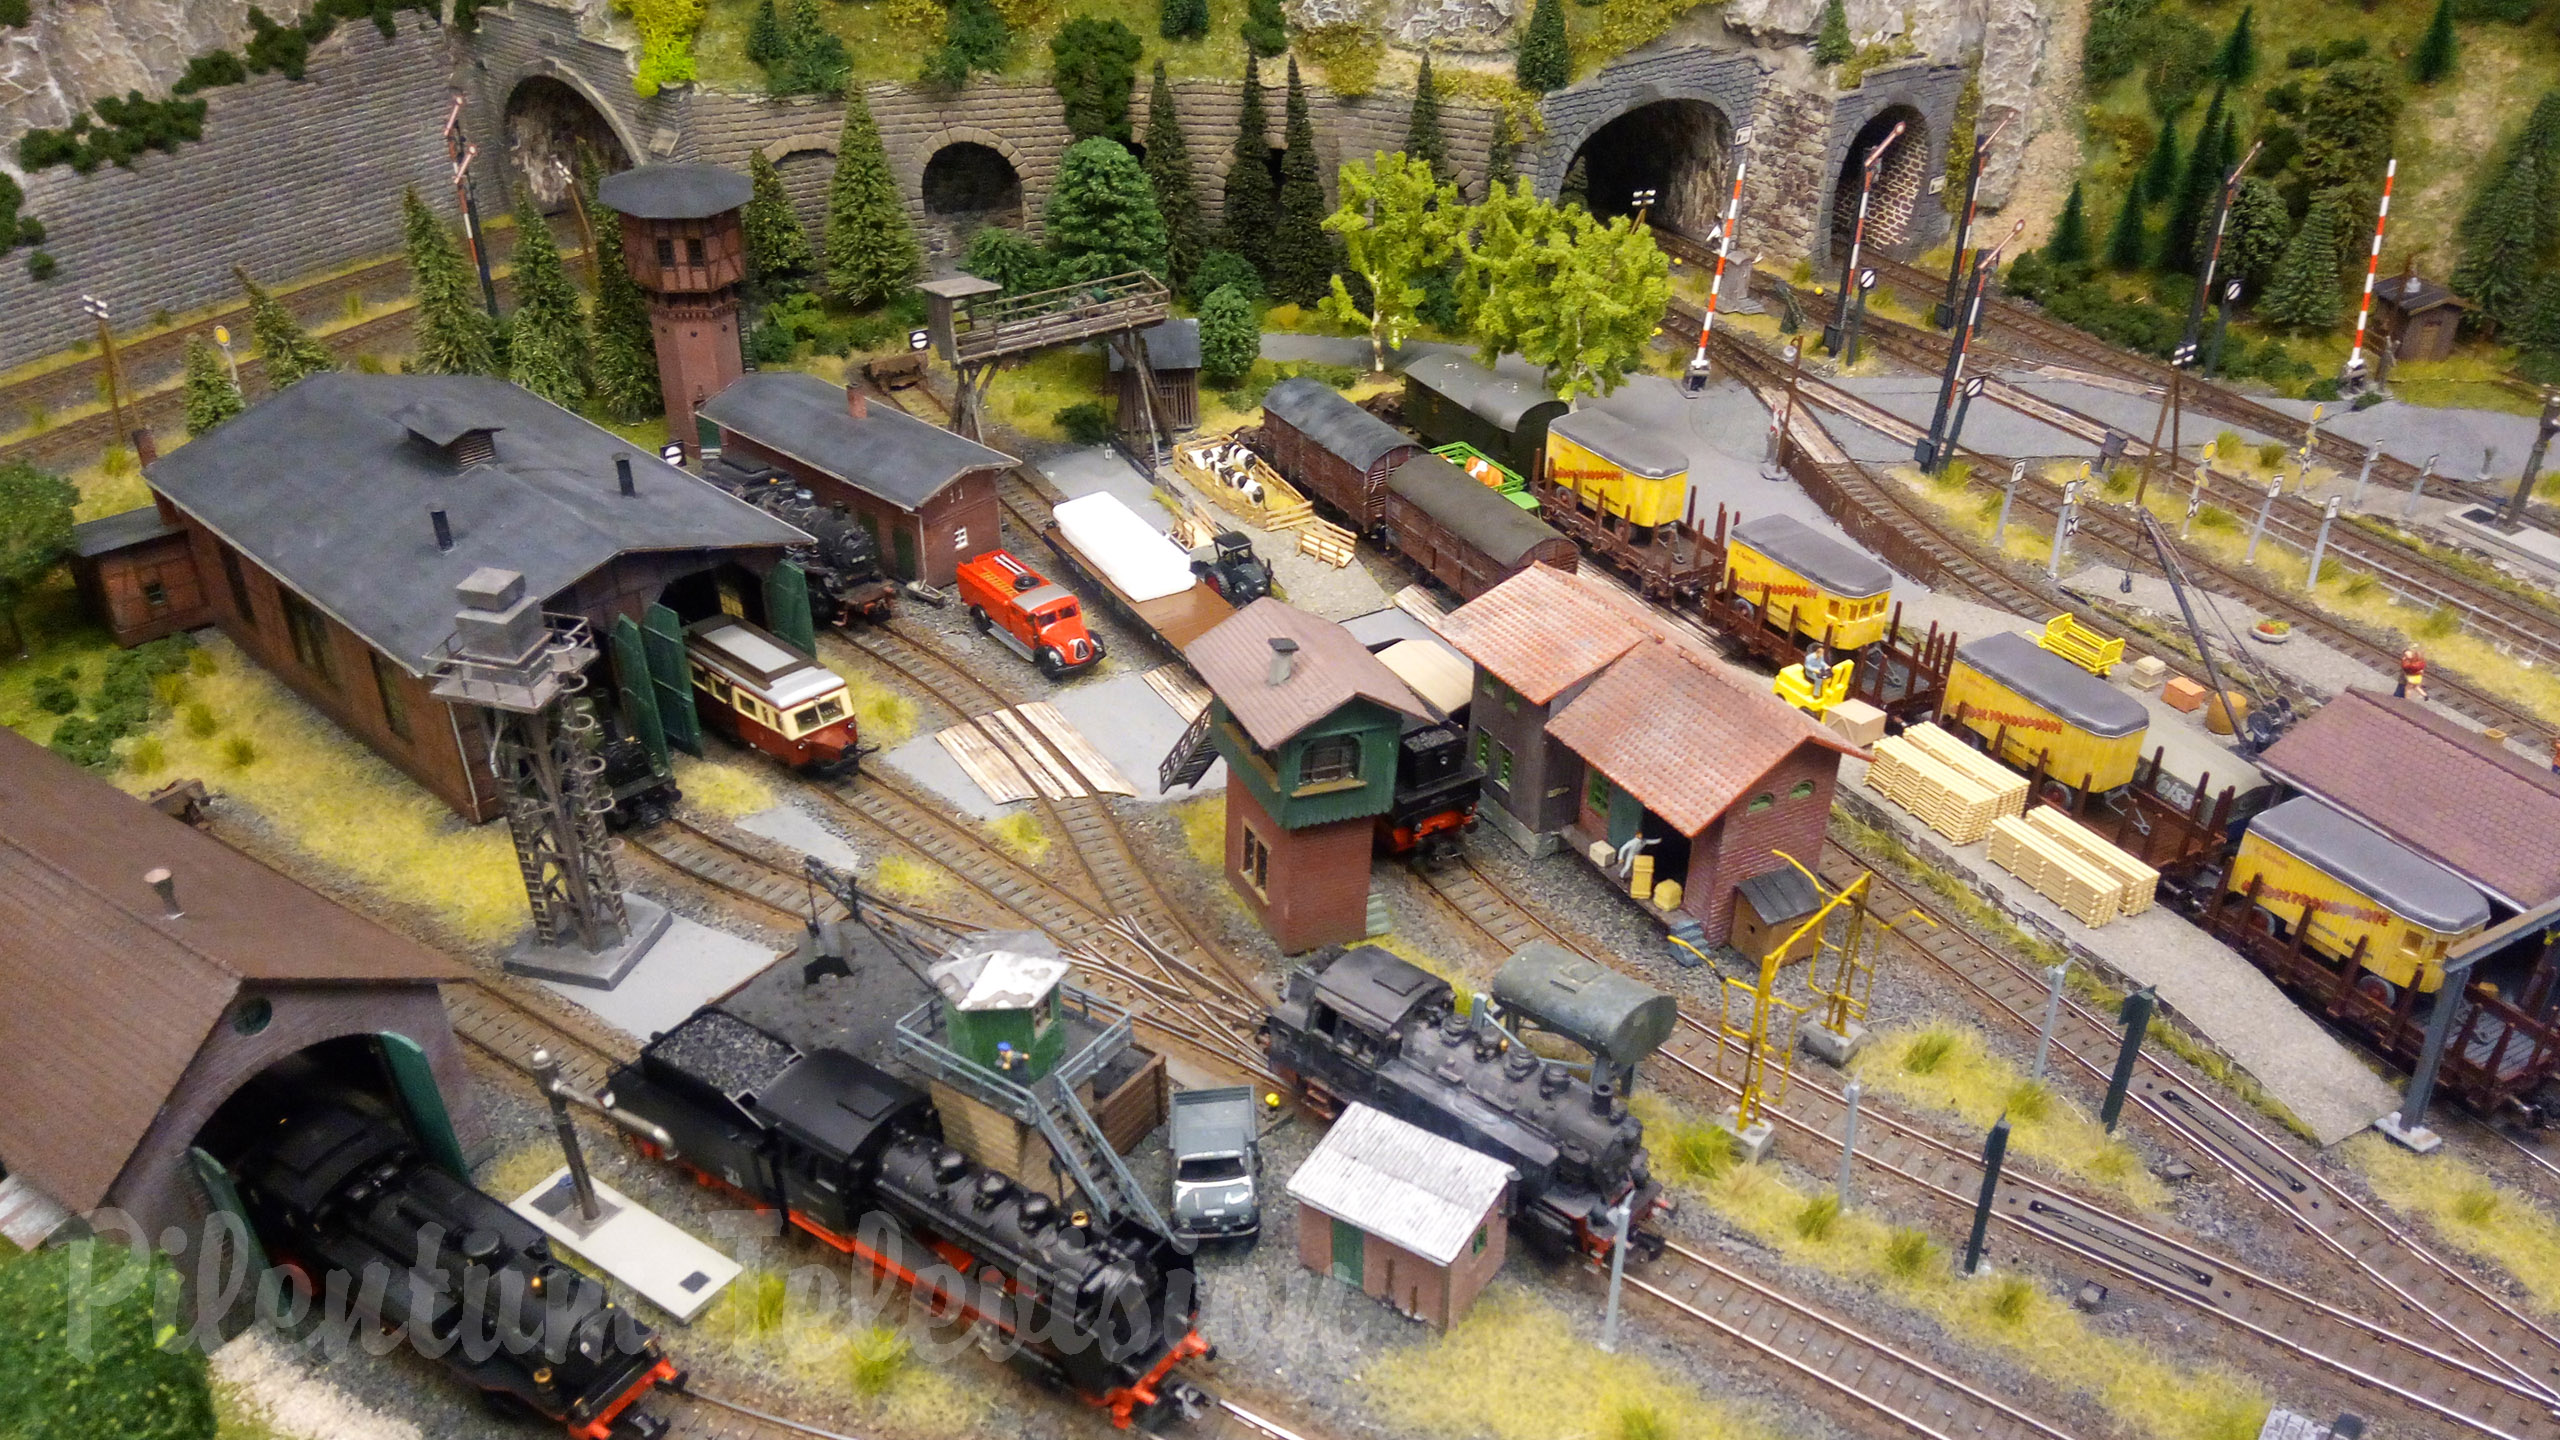 Maquette ferroviaire de locomotive à vapeur à l’échelle HO avec des milliers de détails (Allemagne)